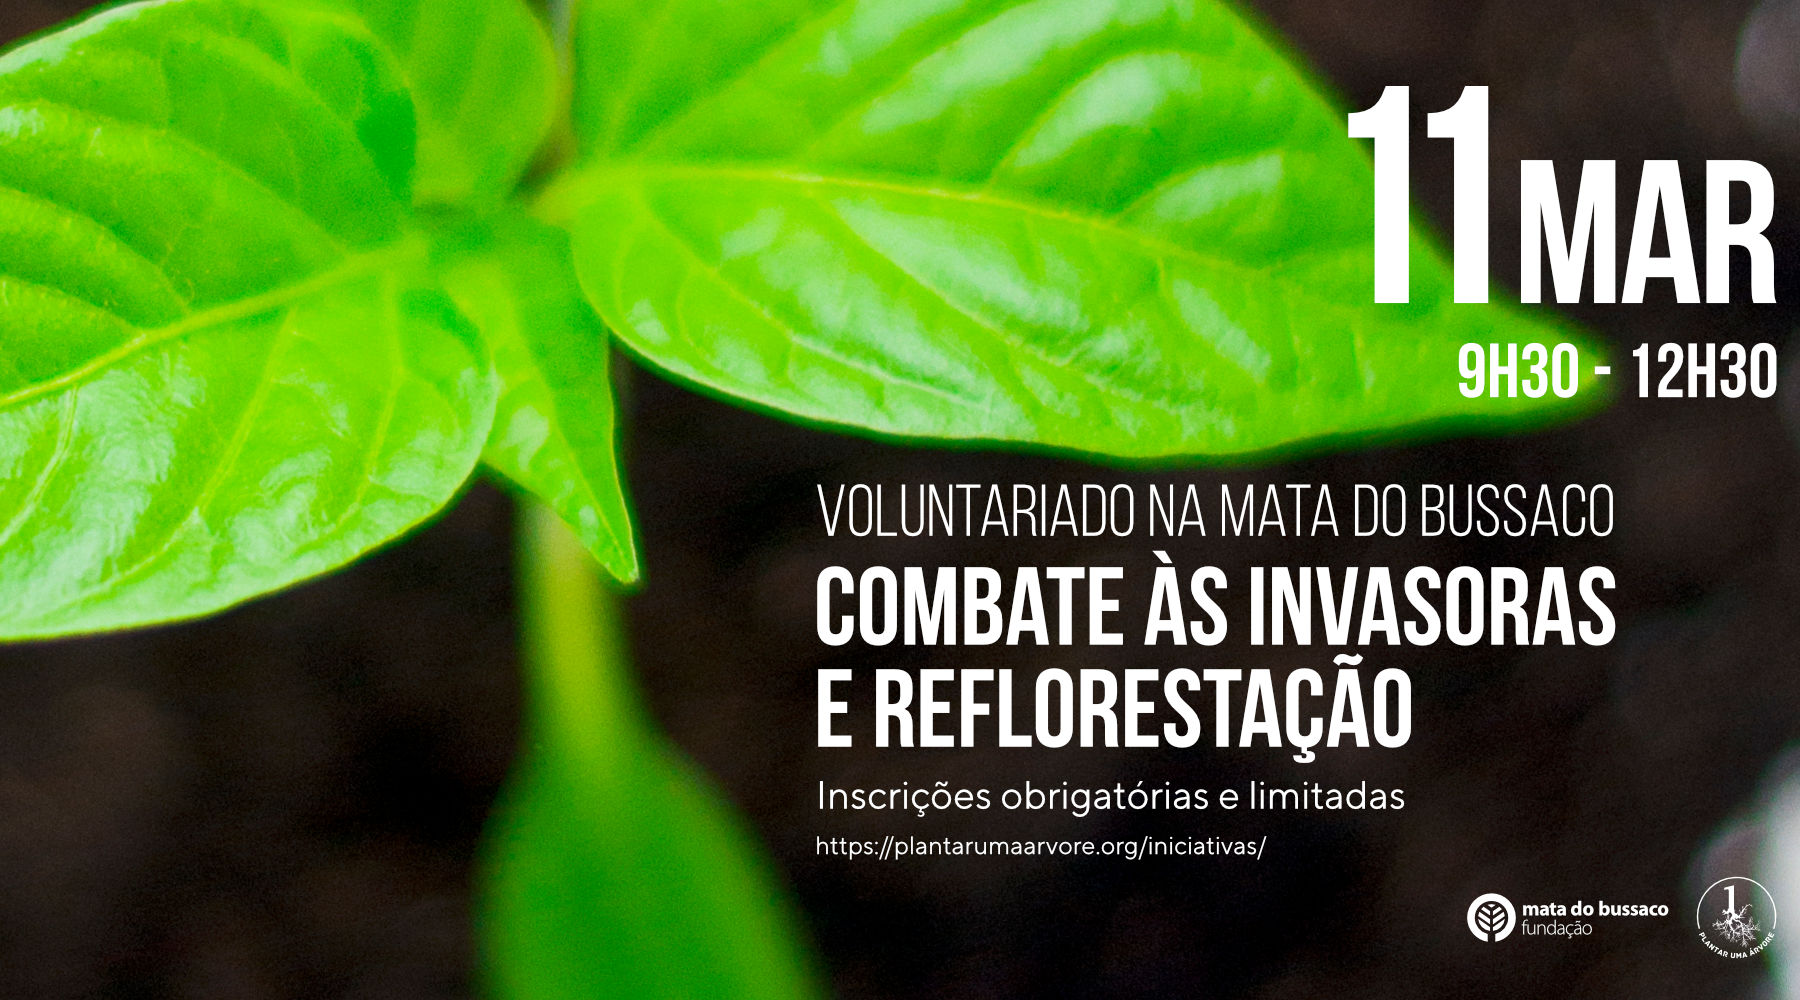 Voluntariado – Combate às invasoras e reflorestação